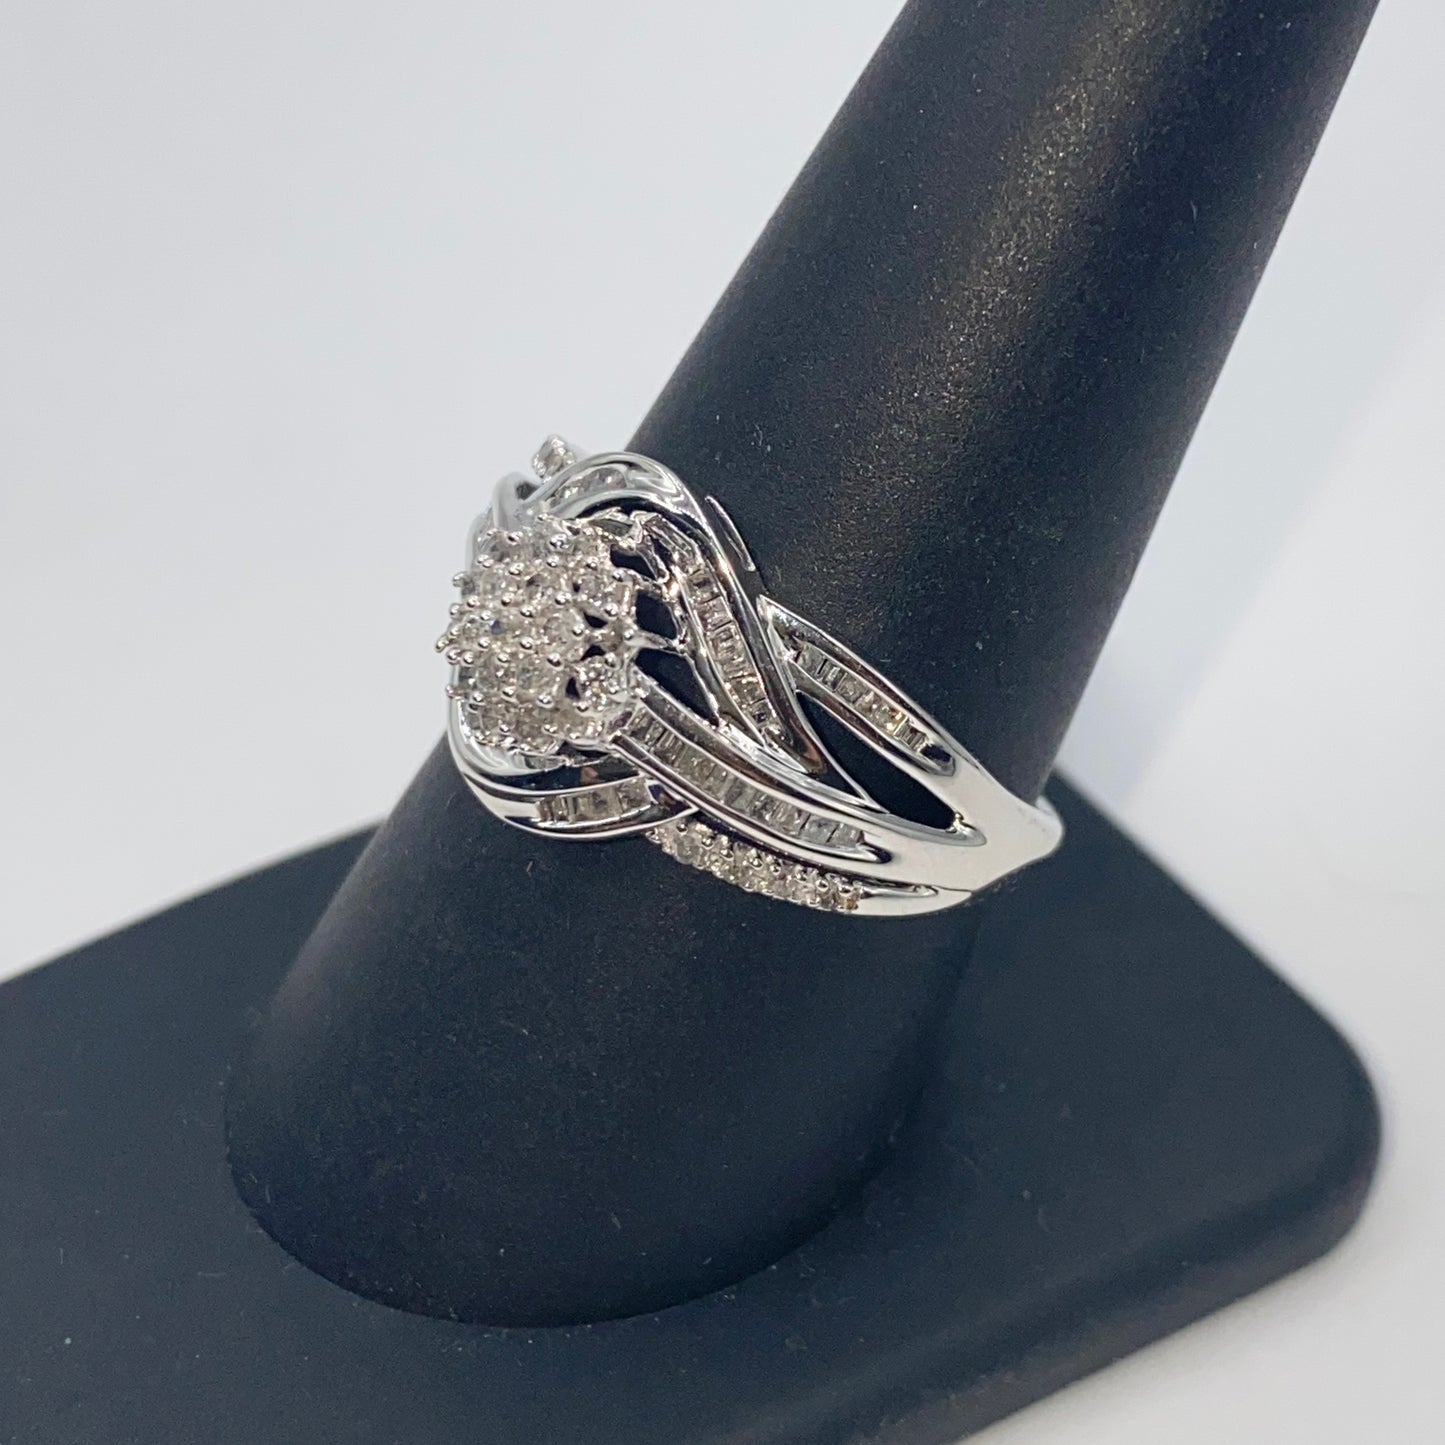 10K Flower Ribbon Diamond Baguette Ring